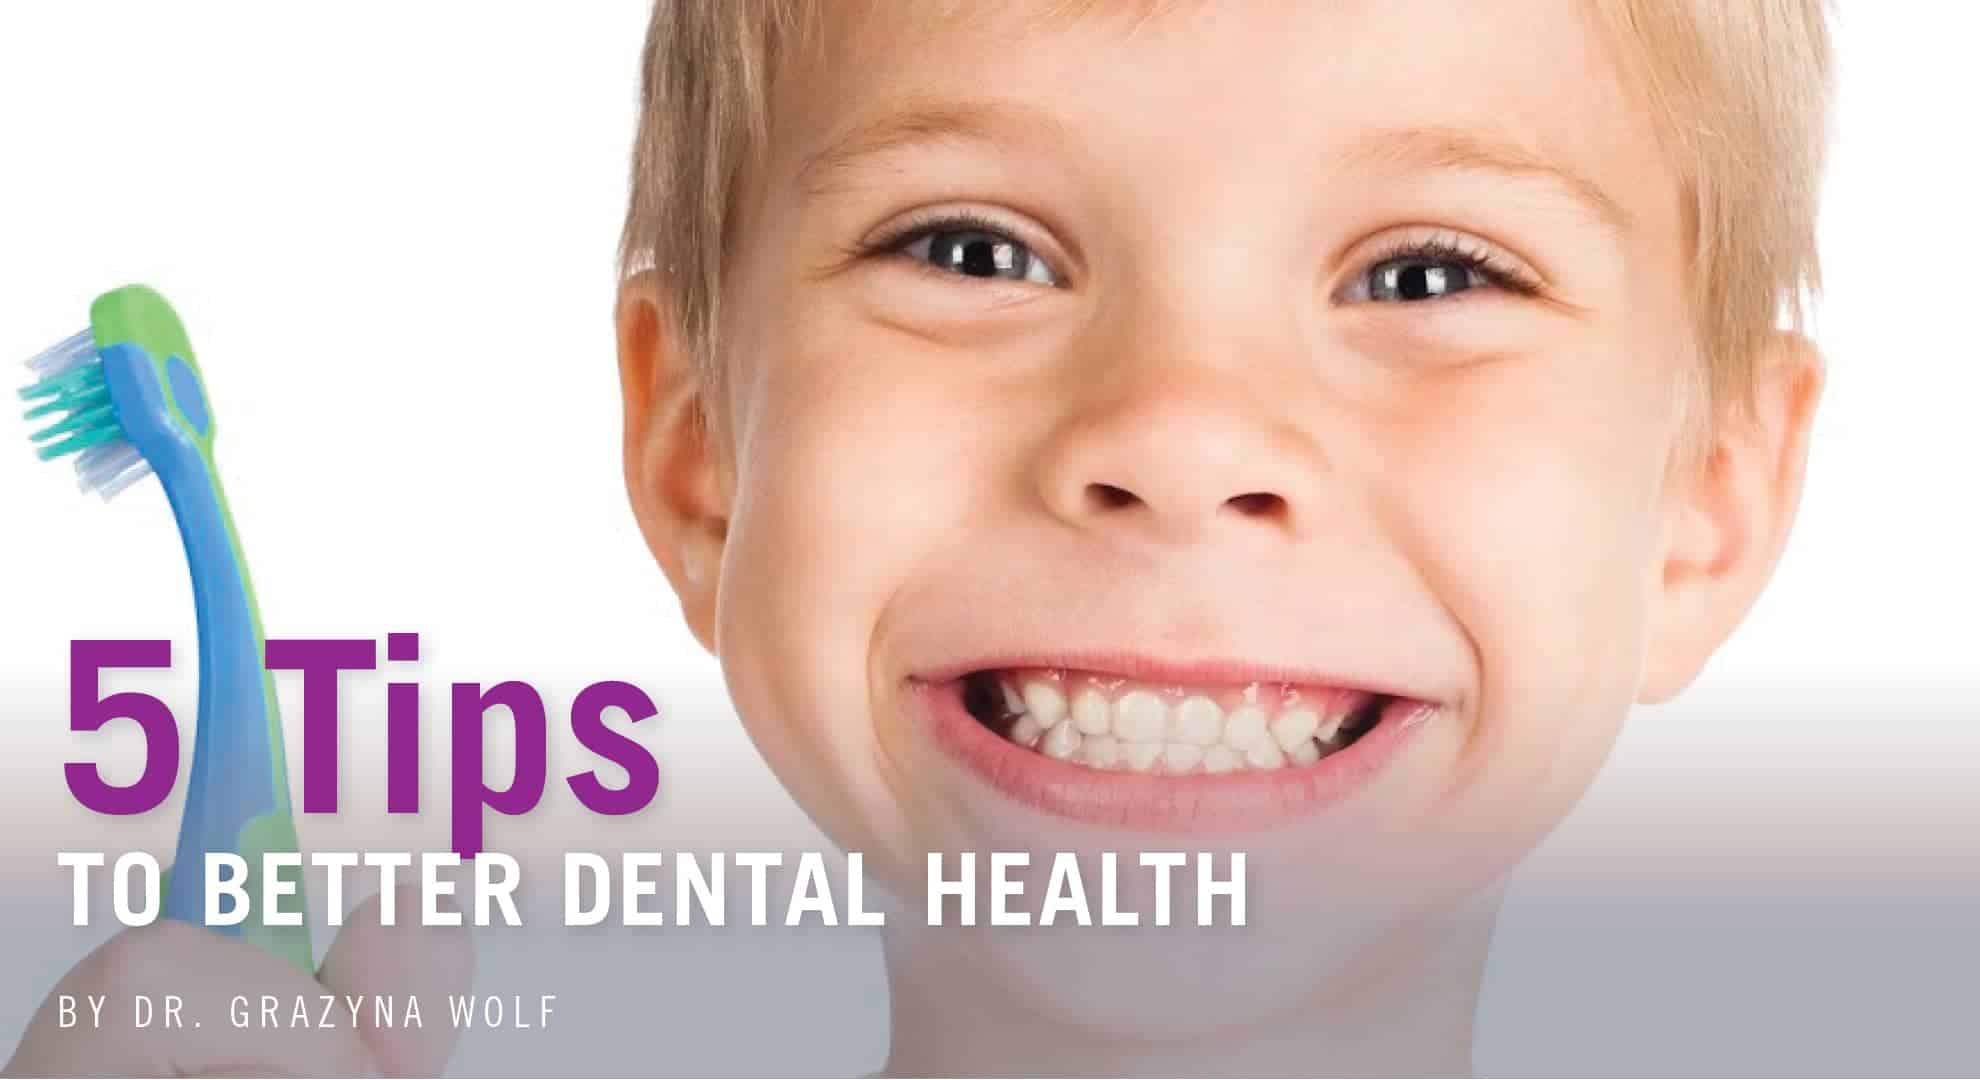 5 Tips to Better Dental Health